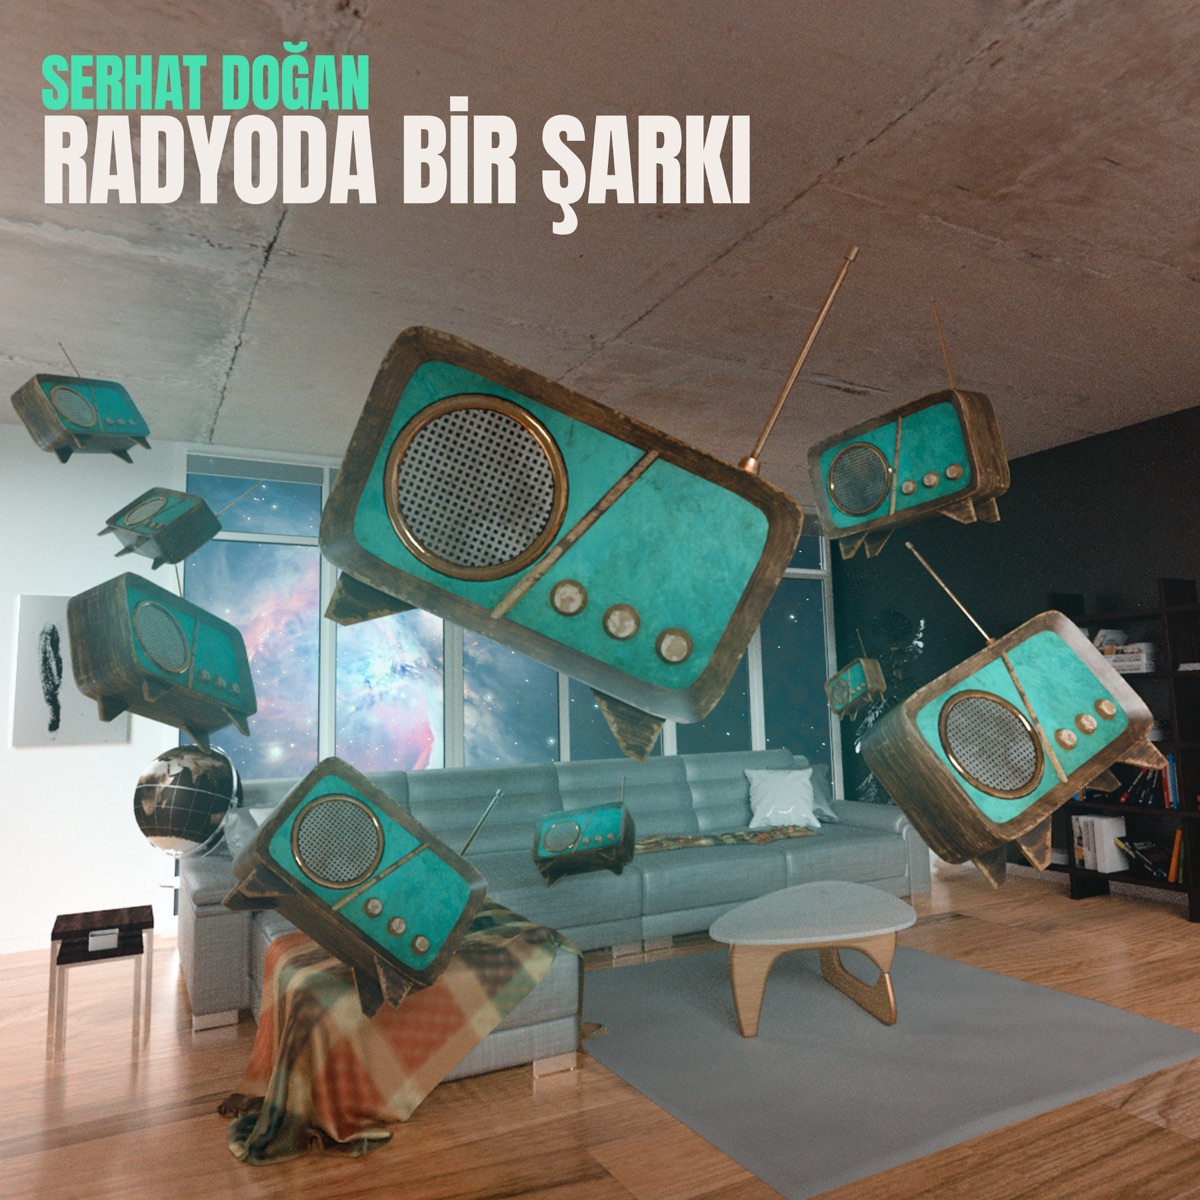 Radyoda Bir Şarkı - Single - Album by Serhat Doğan - Apple Music